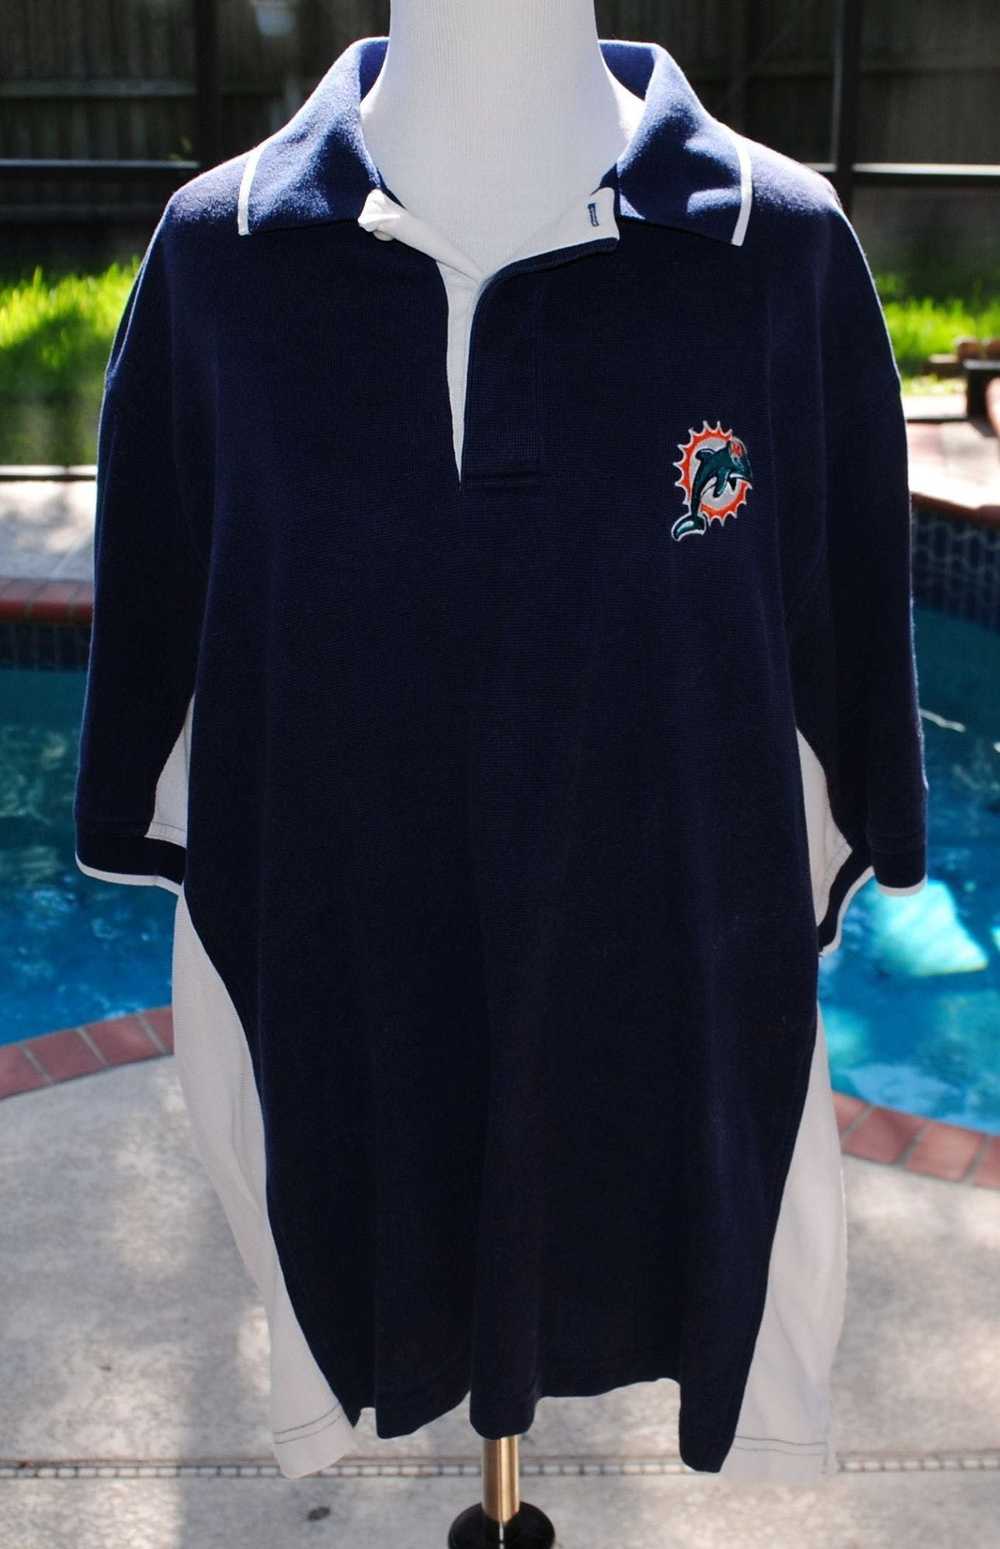 Reebok Very nice vintage Miami Dolphins Polo Shir… - image 1